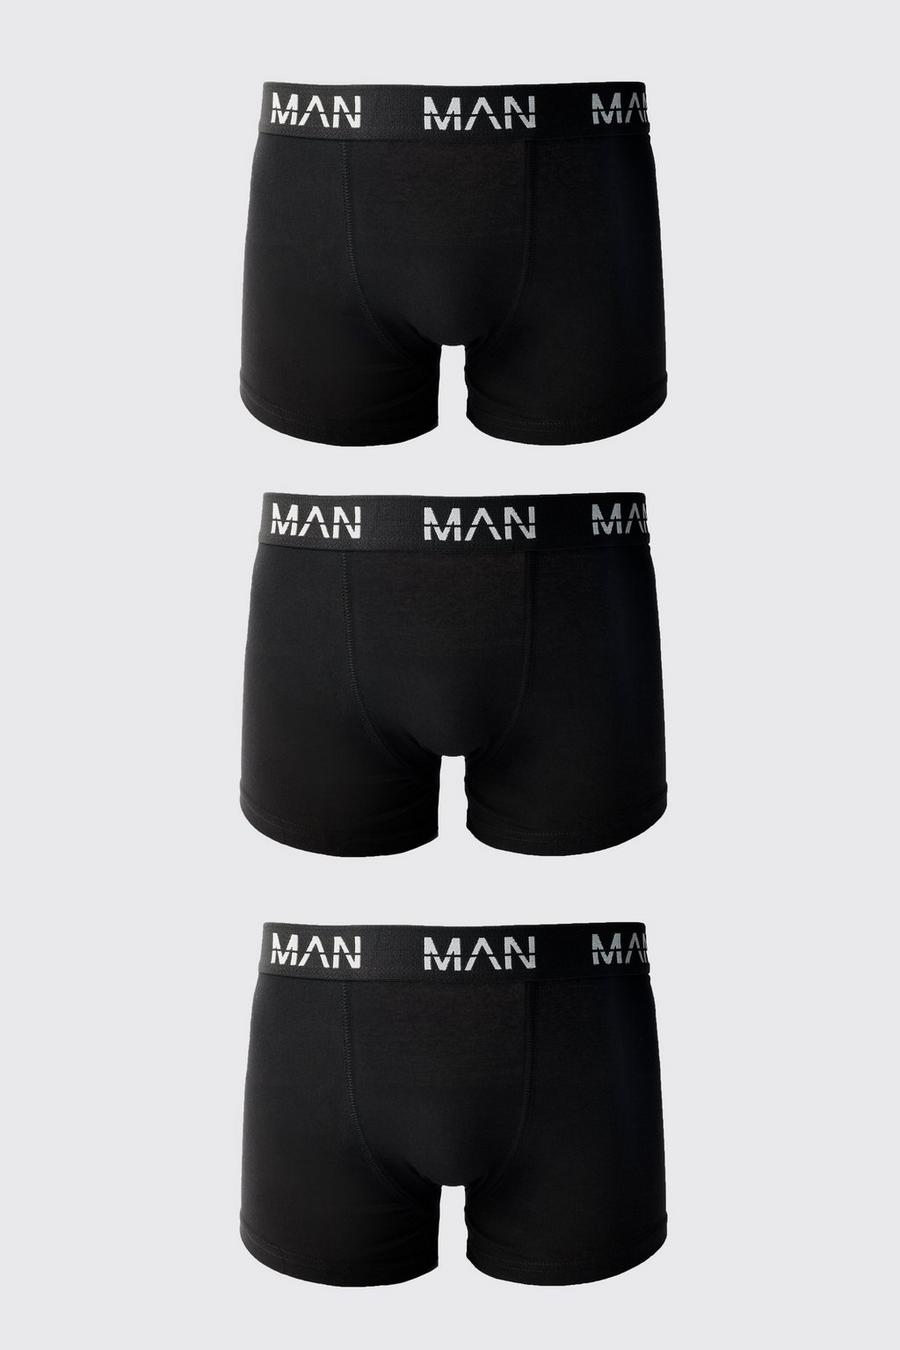 3er-Pack Man Boxershorts, Black